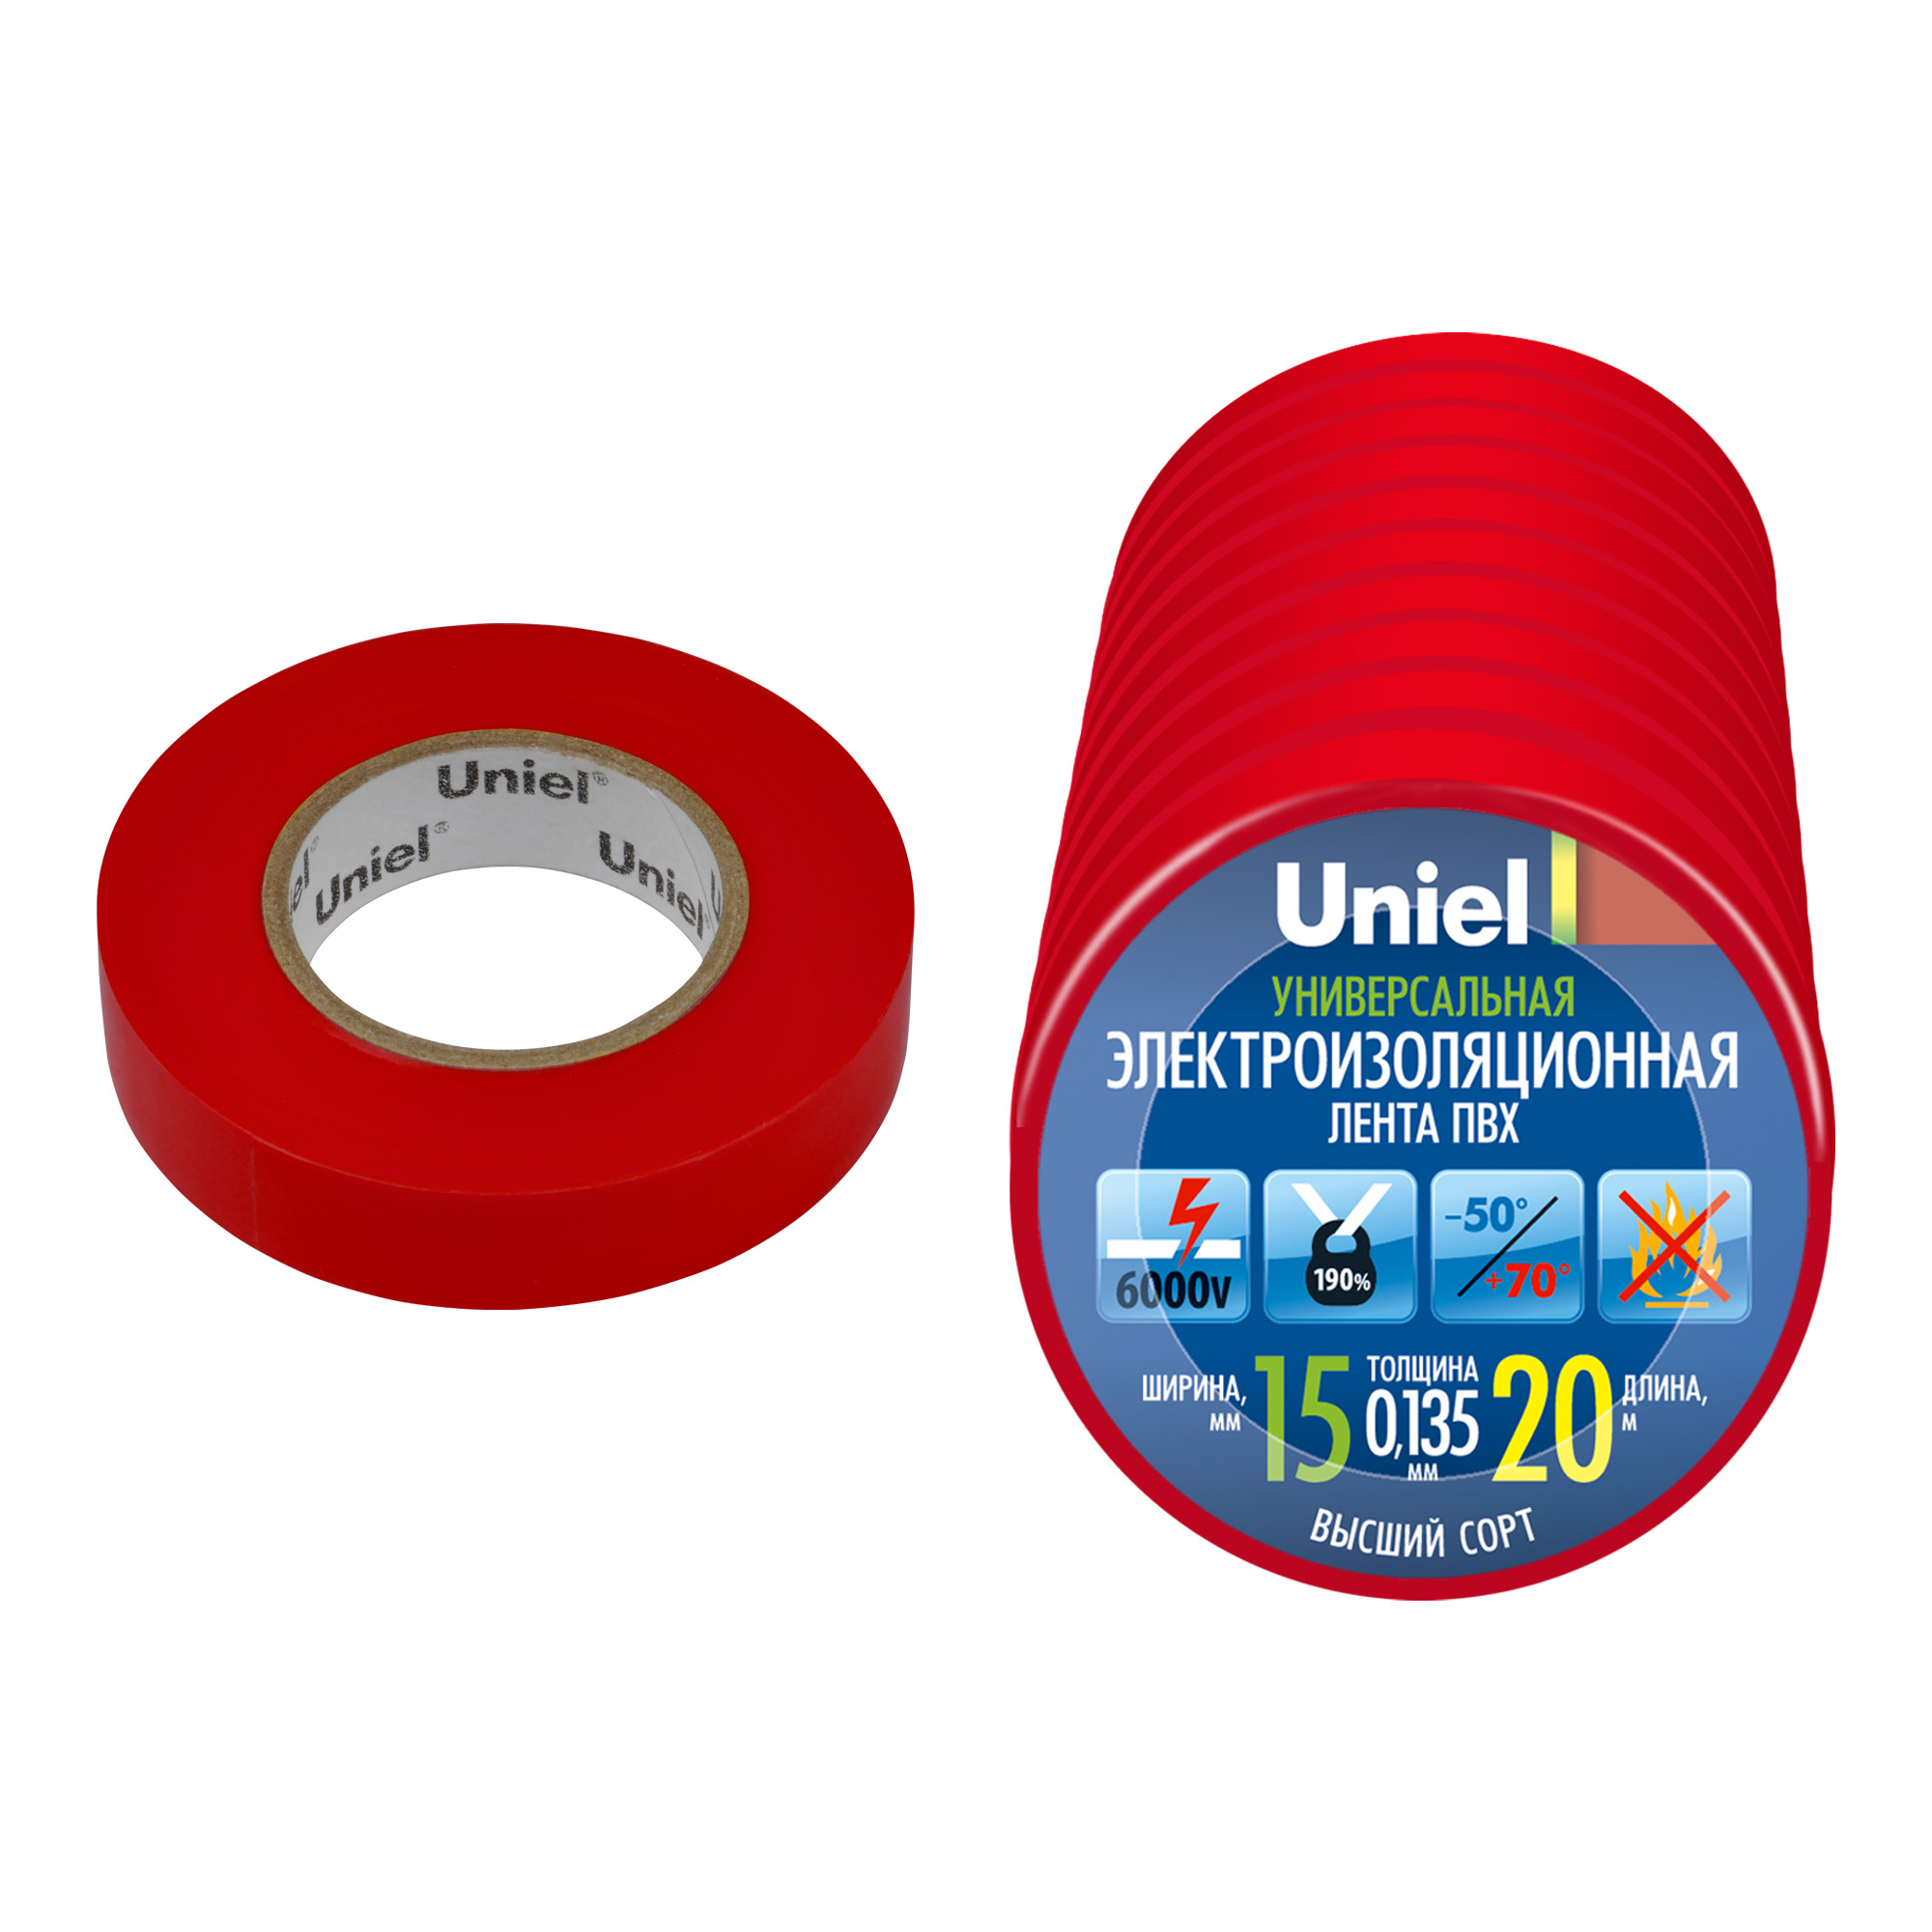 UIT-135P 20-15-10 RED Изоляционная лента Uniel 20м. 15мм. 0.135мм. 10шт. цвет Красный